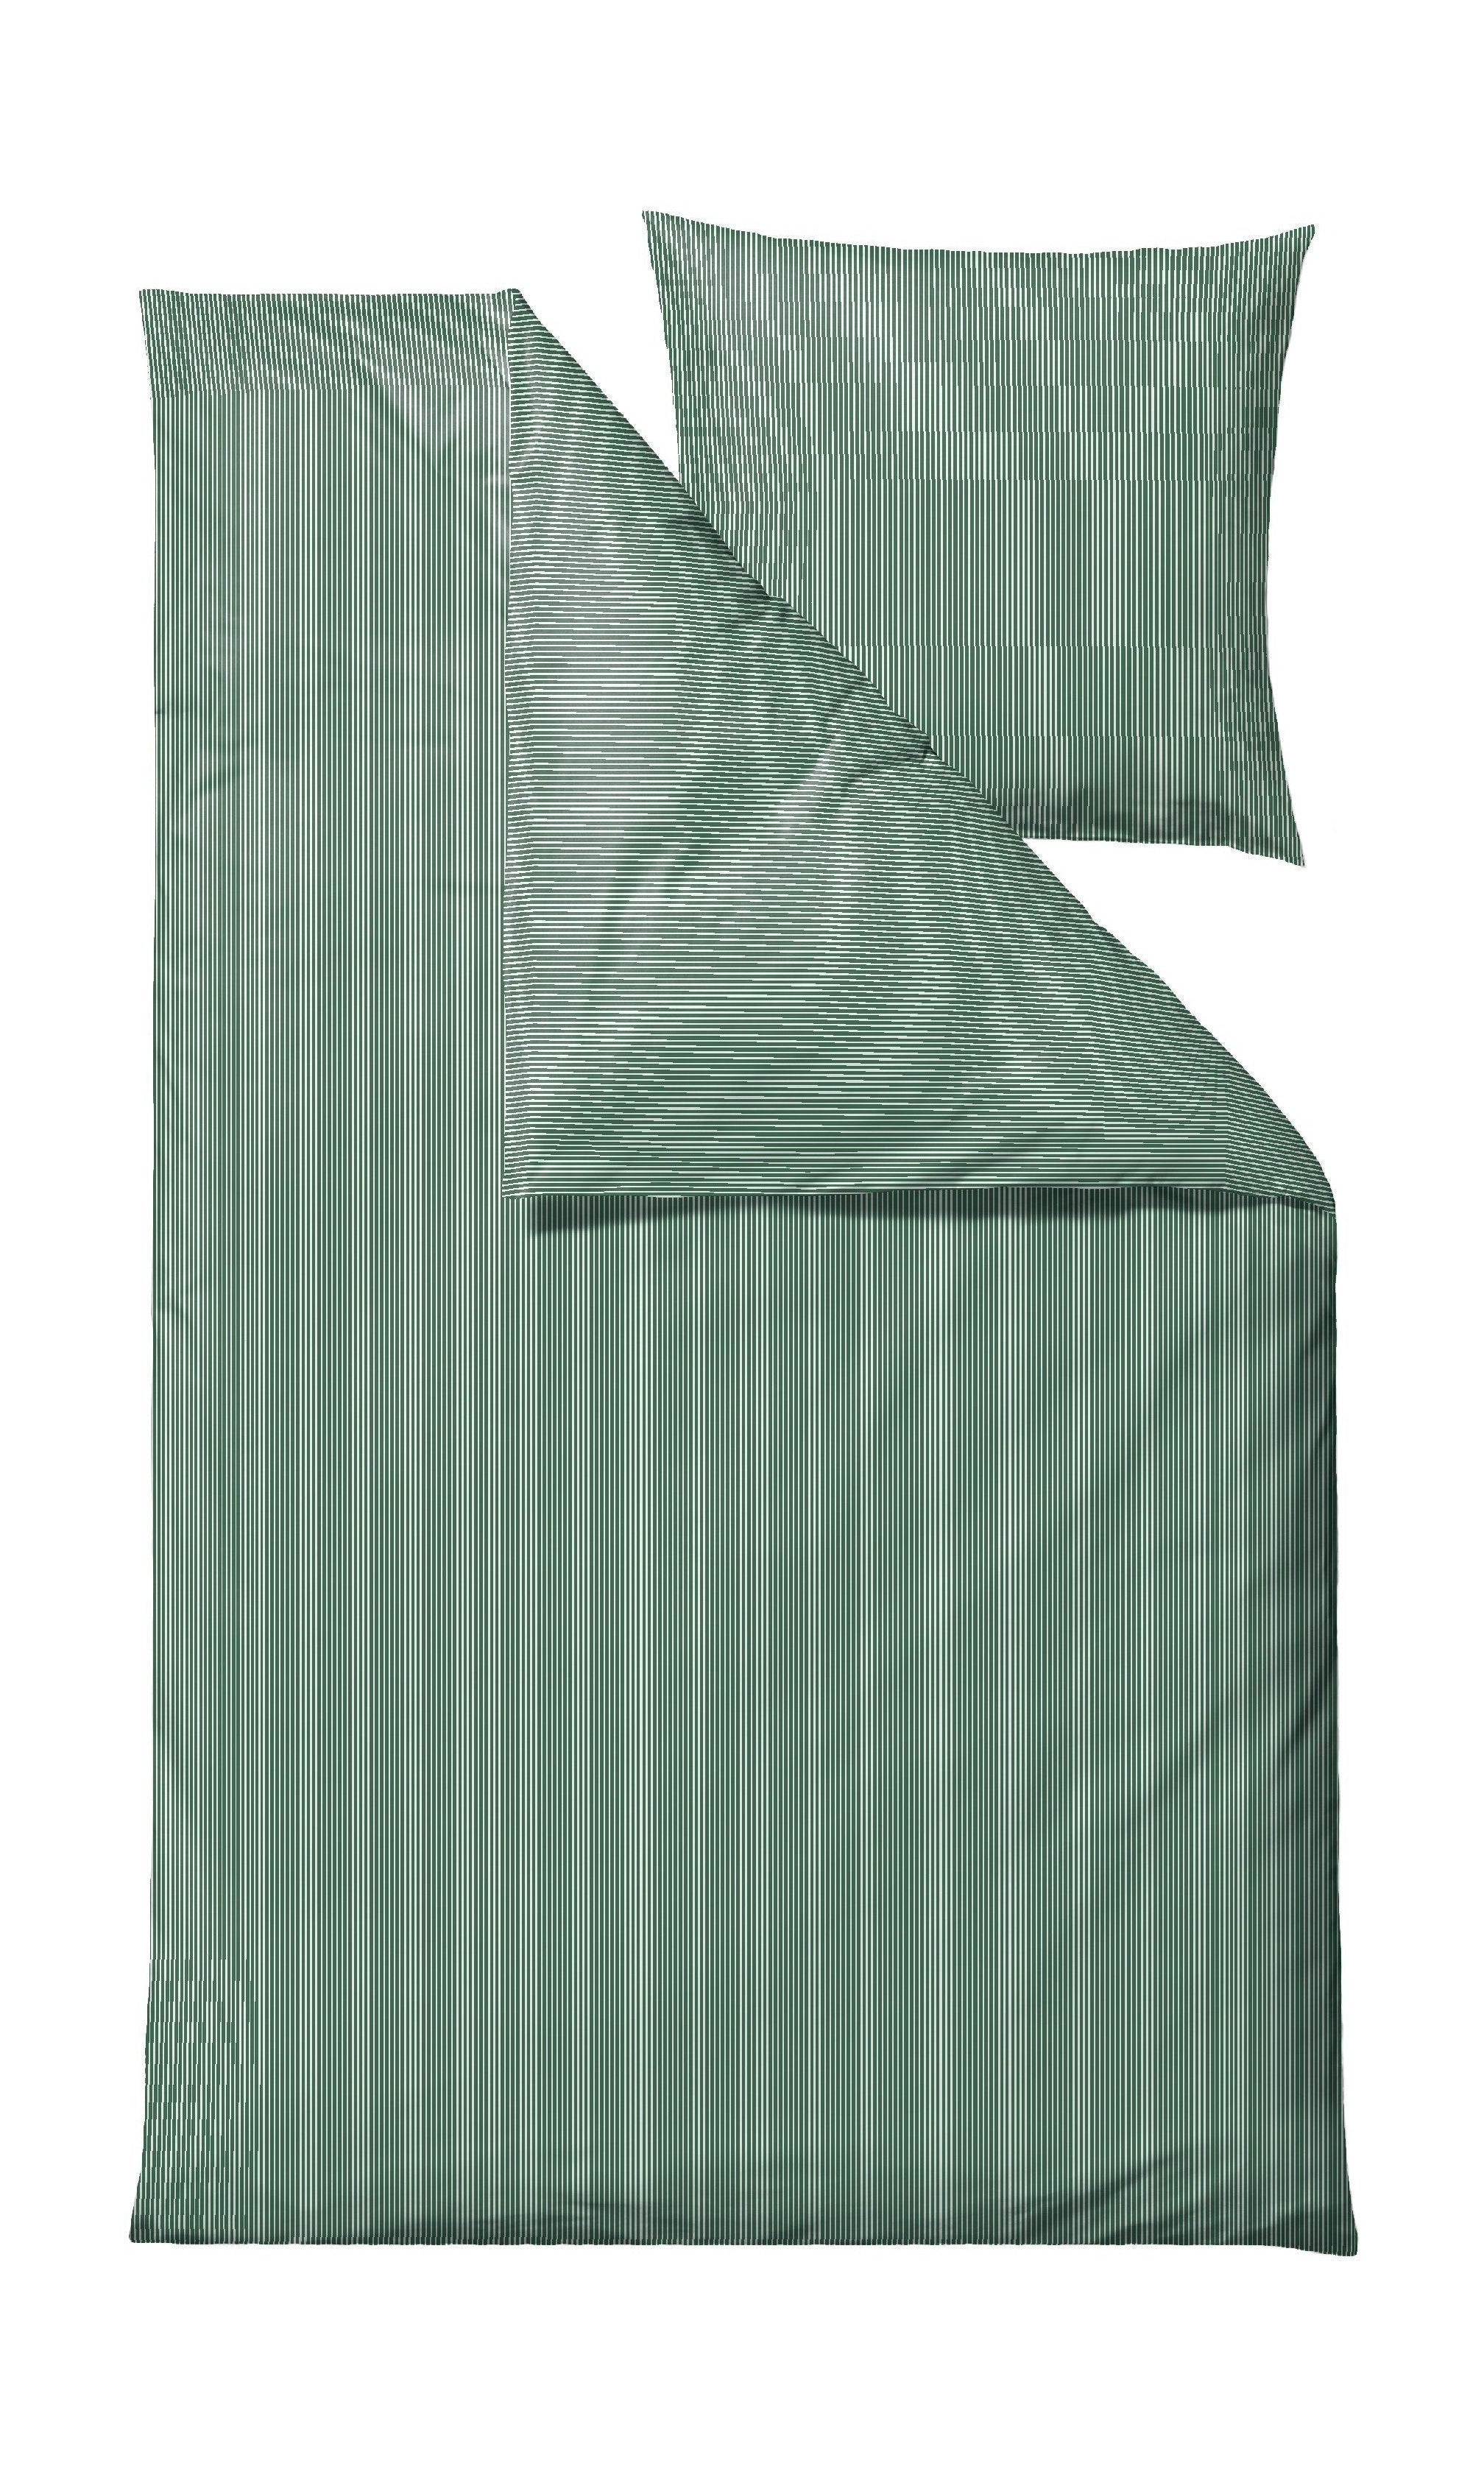 Södahl fröhliches Bett Leinen 140 x 220 cm, grün